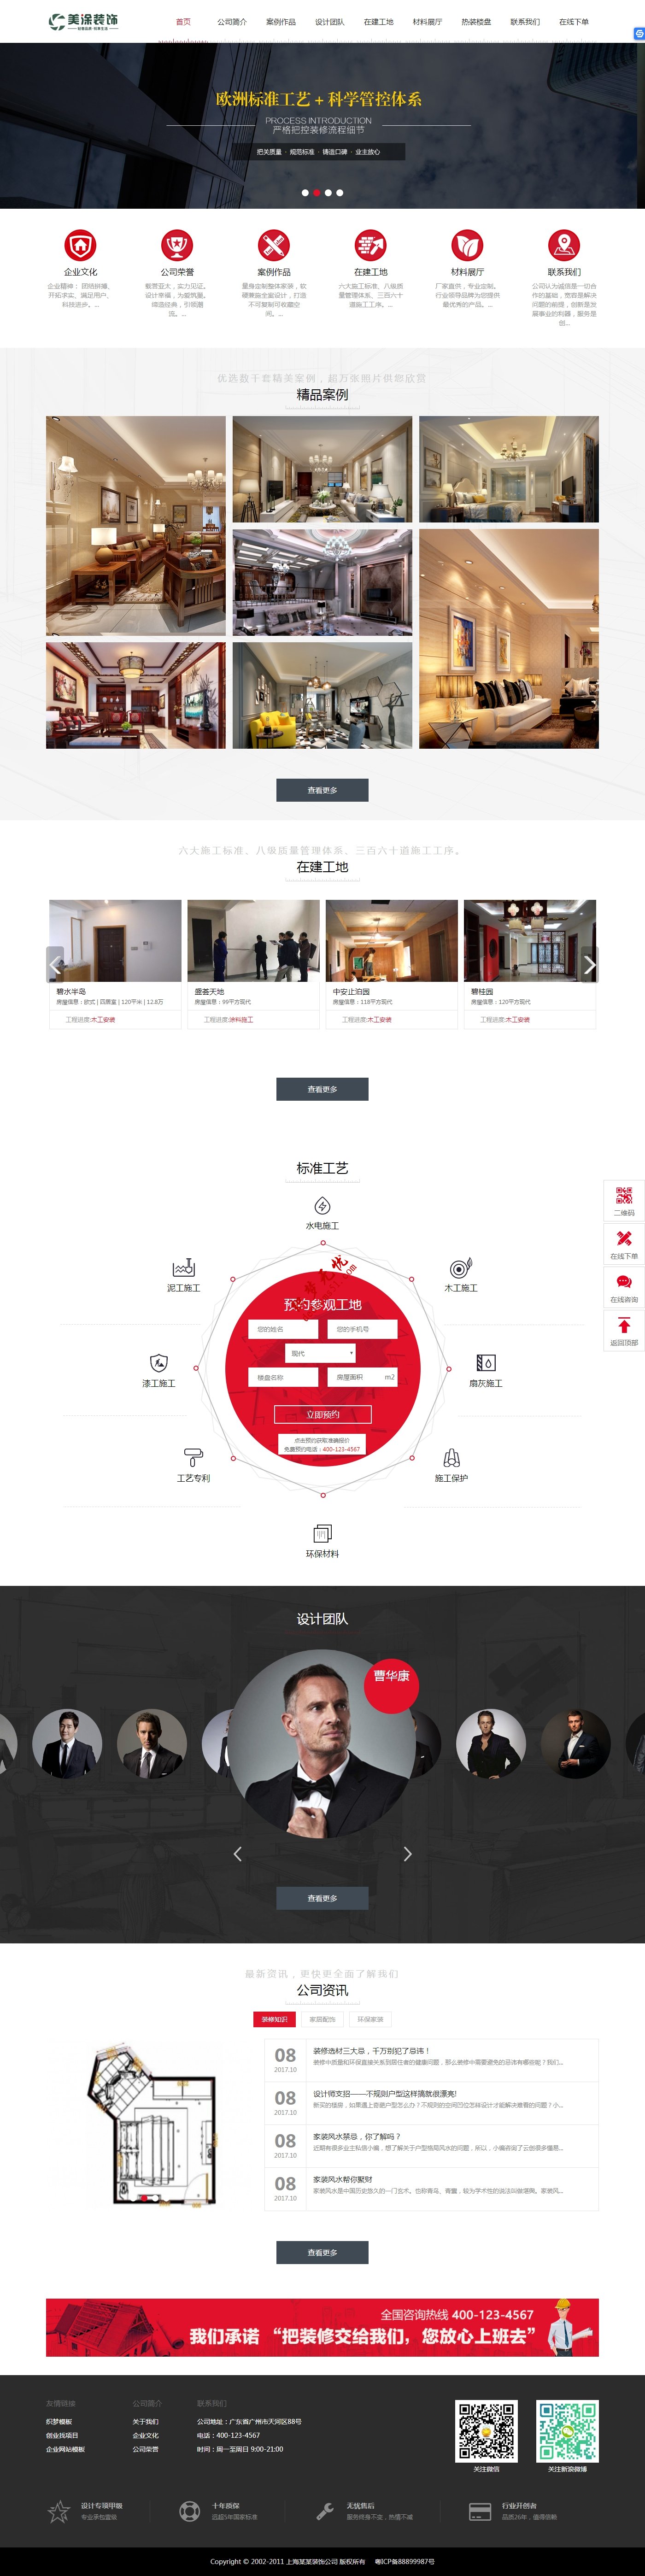 红色简洁装潢装饰装修设计报价公司网站dede织梦模板下载(带手机端)